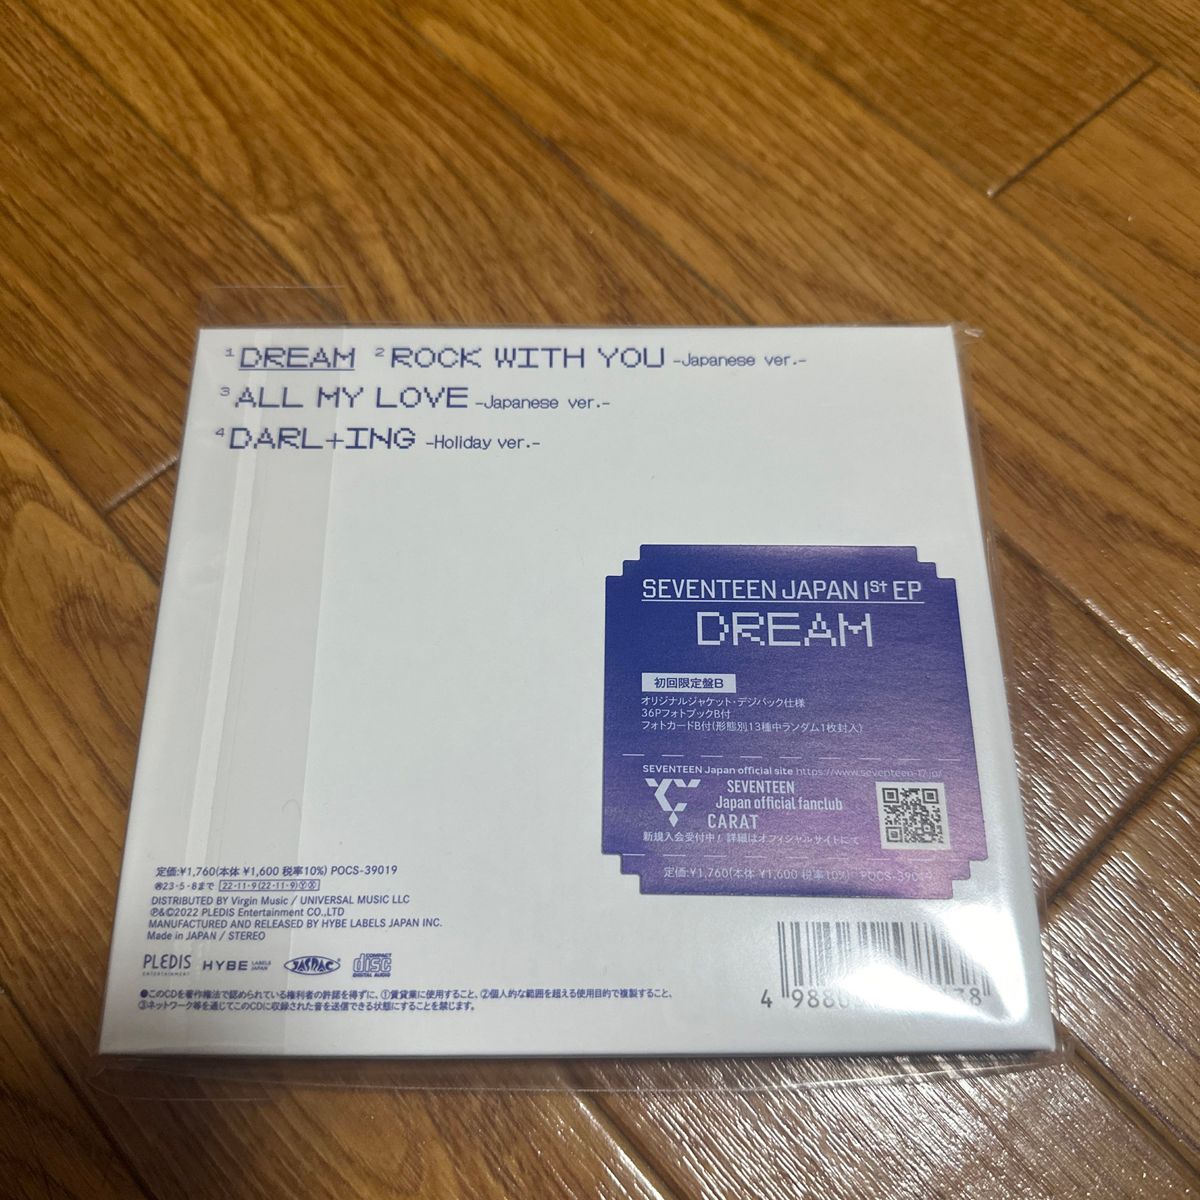 【特典付】 SEVENTEEN JAPAN 1ST EP 「DREAM」 初回限定盤B CD SEVENTEEN 倉庫S